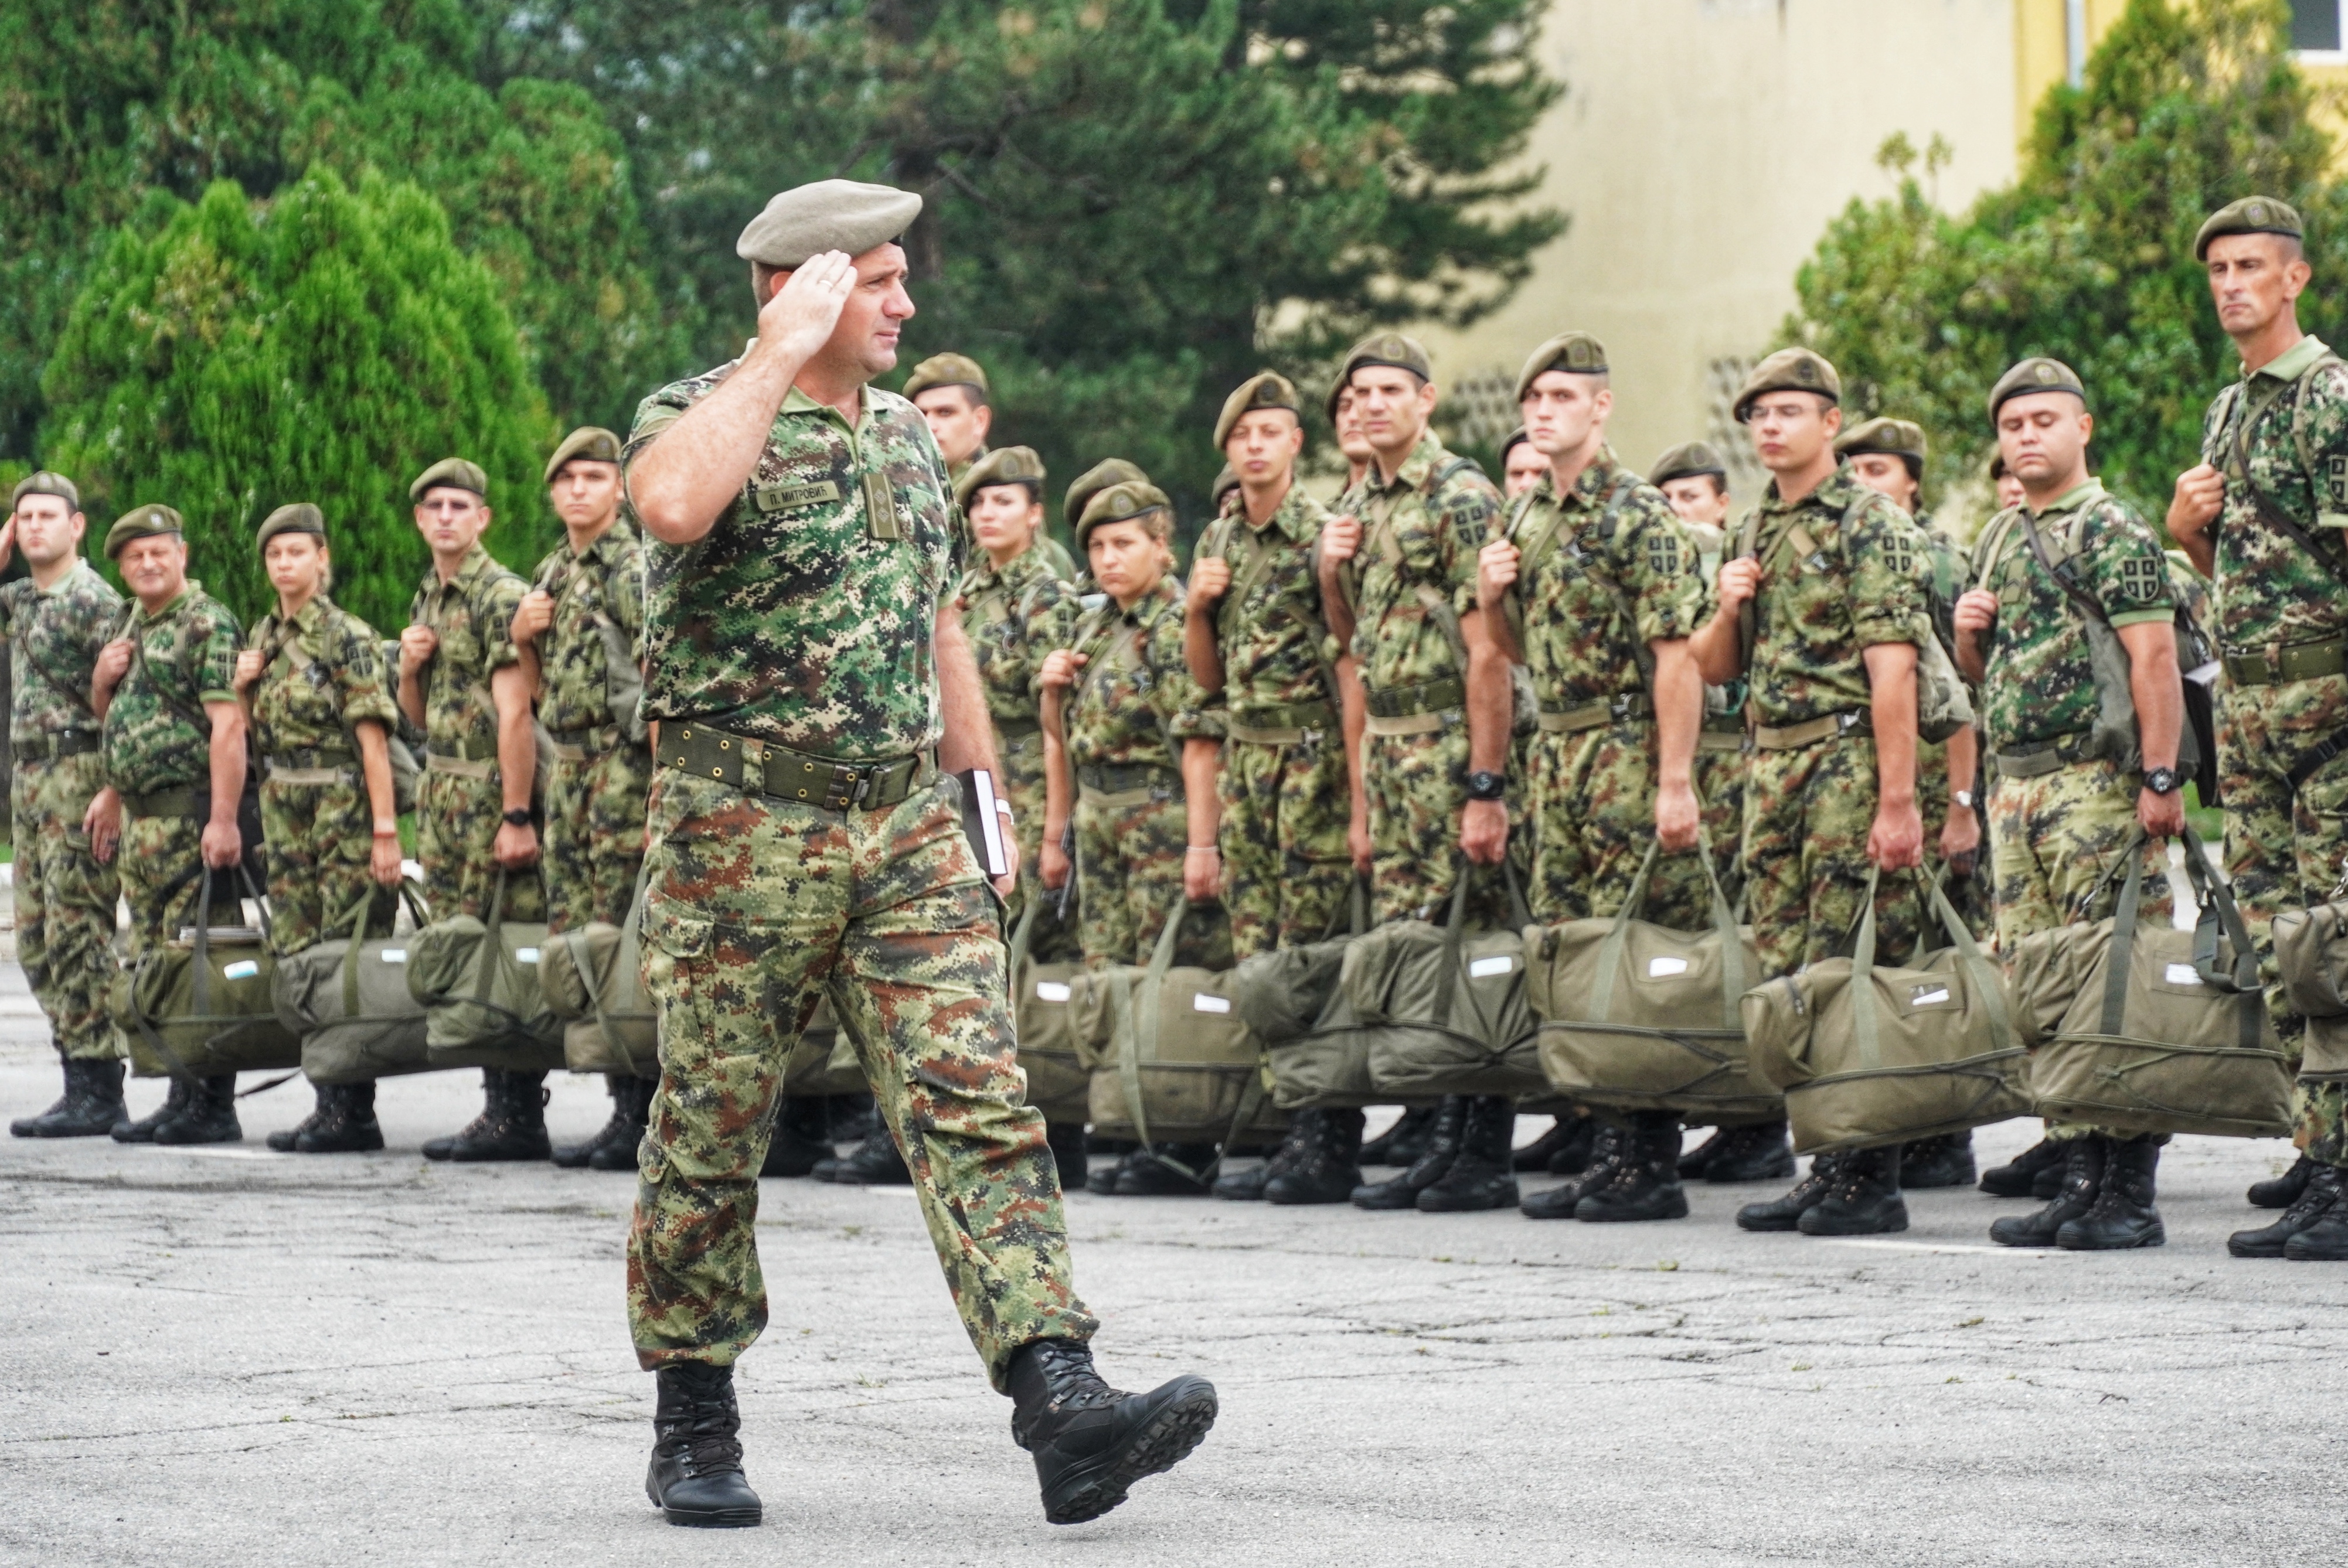 Mladi vojnici: U Vojsci se postaje čovek, čast je služiti Srbiji 